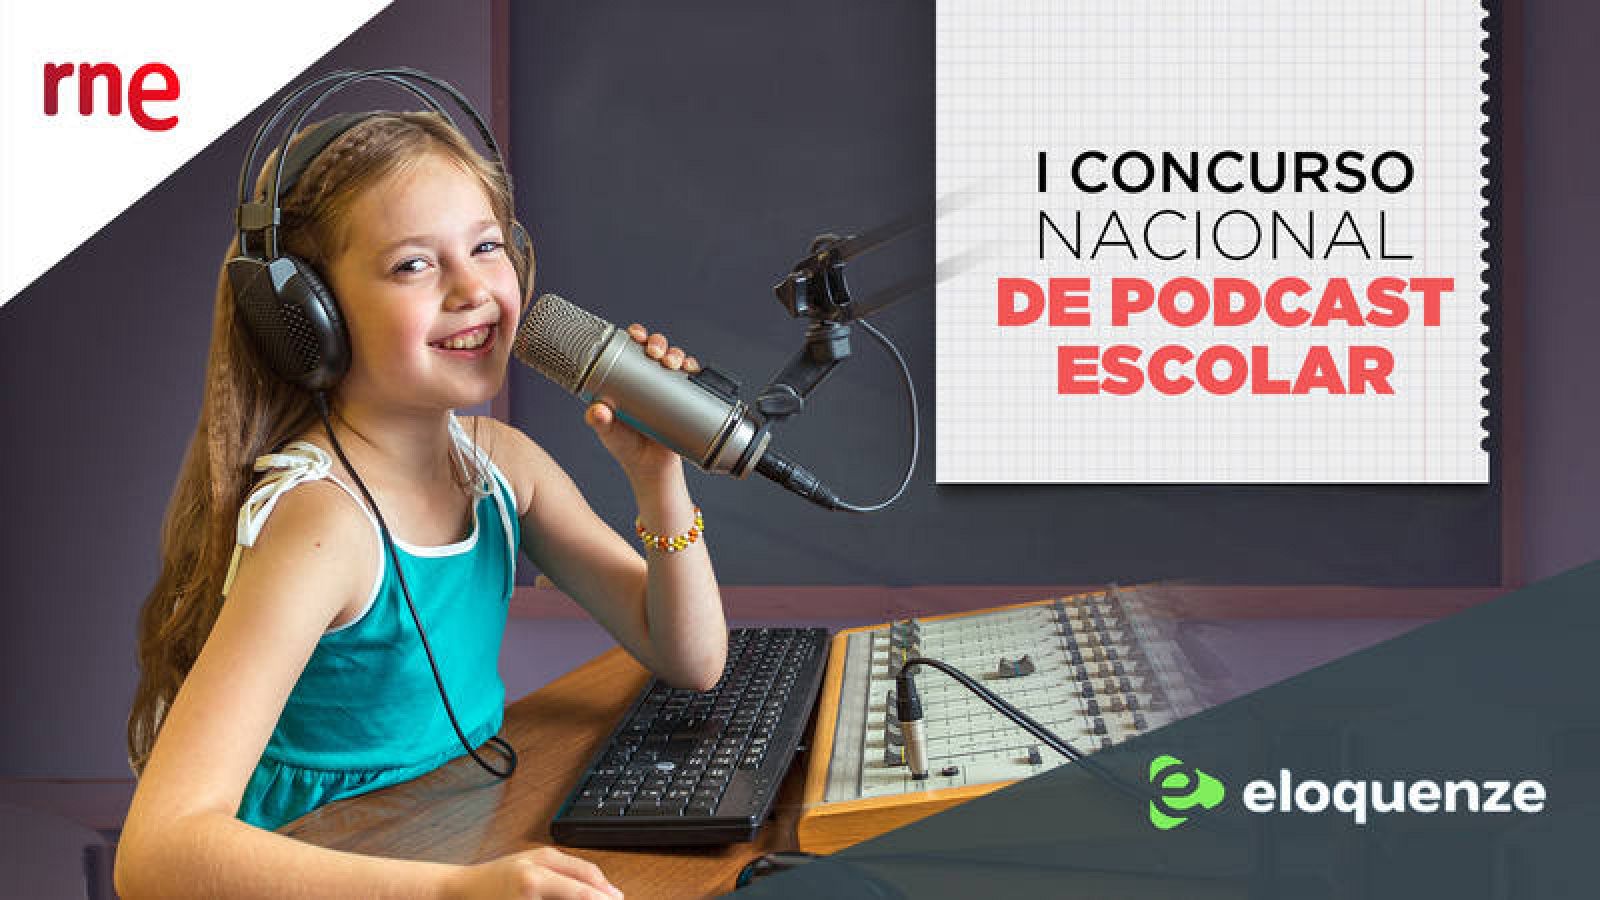 'I Concurso Nacional de Podcast Escolar de RNE' - Ver ahora